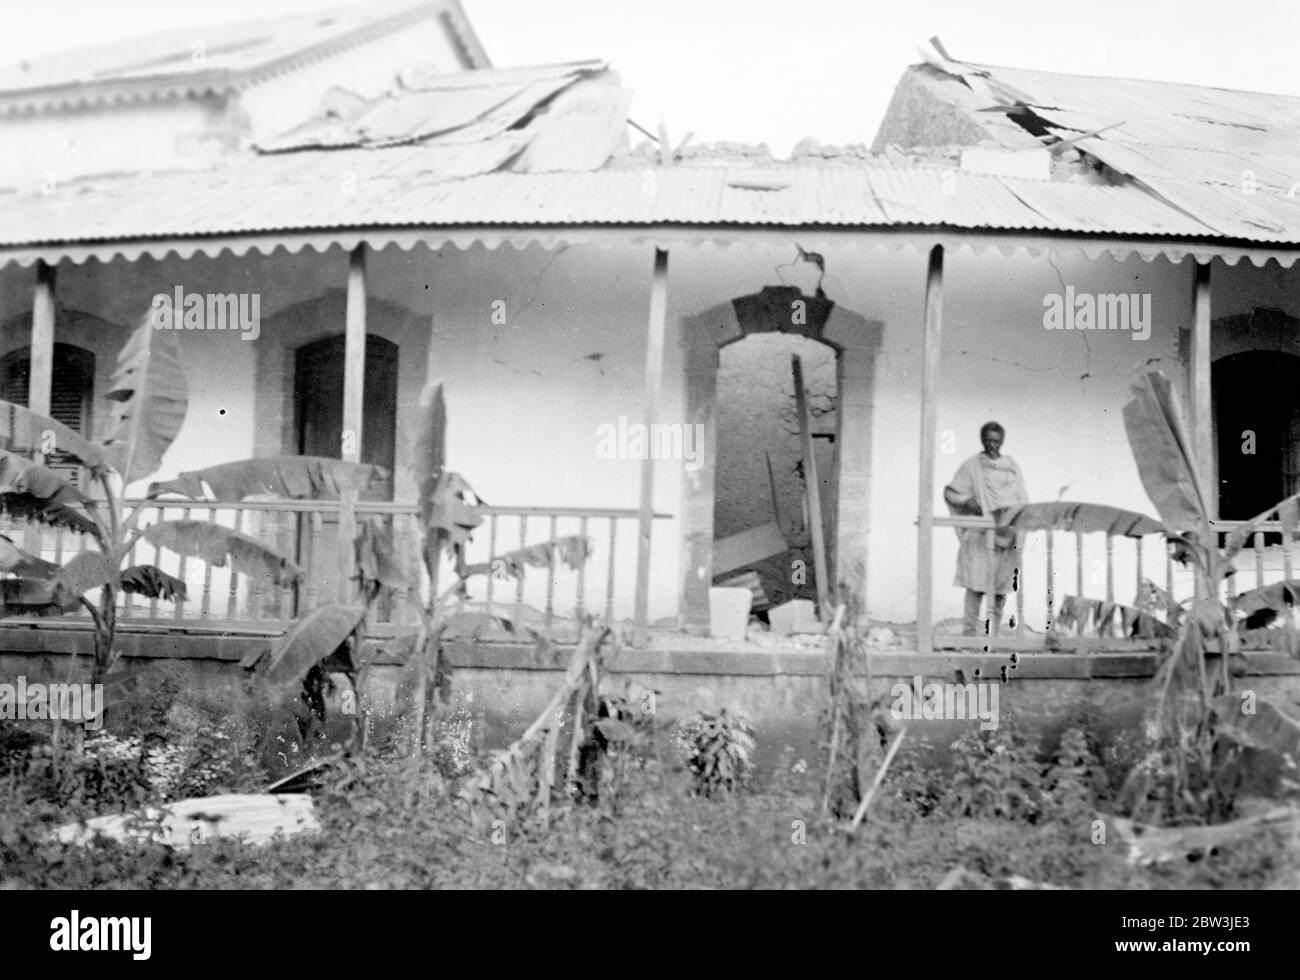 Harar eine zerstörte und verwüsterte Stadt, wartet Besetzung durch Italien. Harar, die zweite Stadt von Abessinien durch wiederholte Luftangriffe und Gasangriffe verwüstet, präsentiert ein Bild der Verwüstung, wie es die Ankunft der Crazieni ' s eindringenden Armee aus dem Süden erwartet. Viele der wichtigsten Gebäude sind nach den wiederholten Bombenangriffen zerstört und unbewohnbar. Foto zeigt, das Haupthotel in Harar bei einem der Luftangriffe zerstört. 22. April 1936 Stockfoto